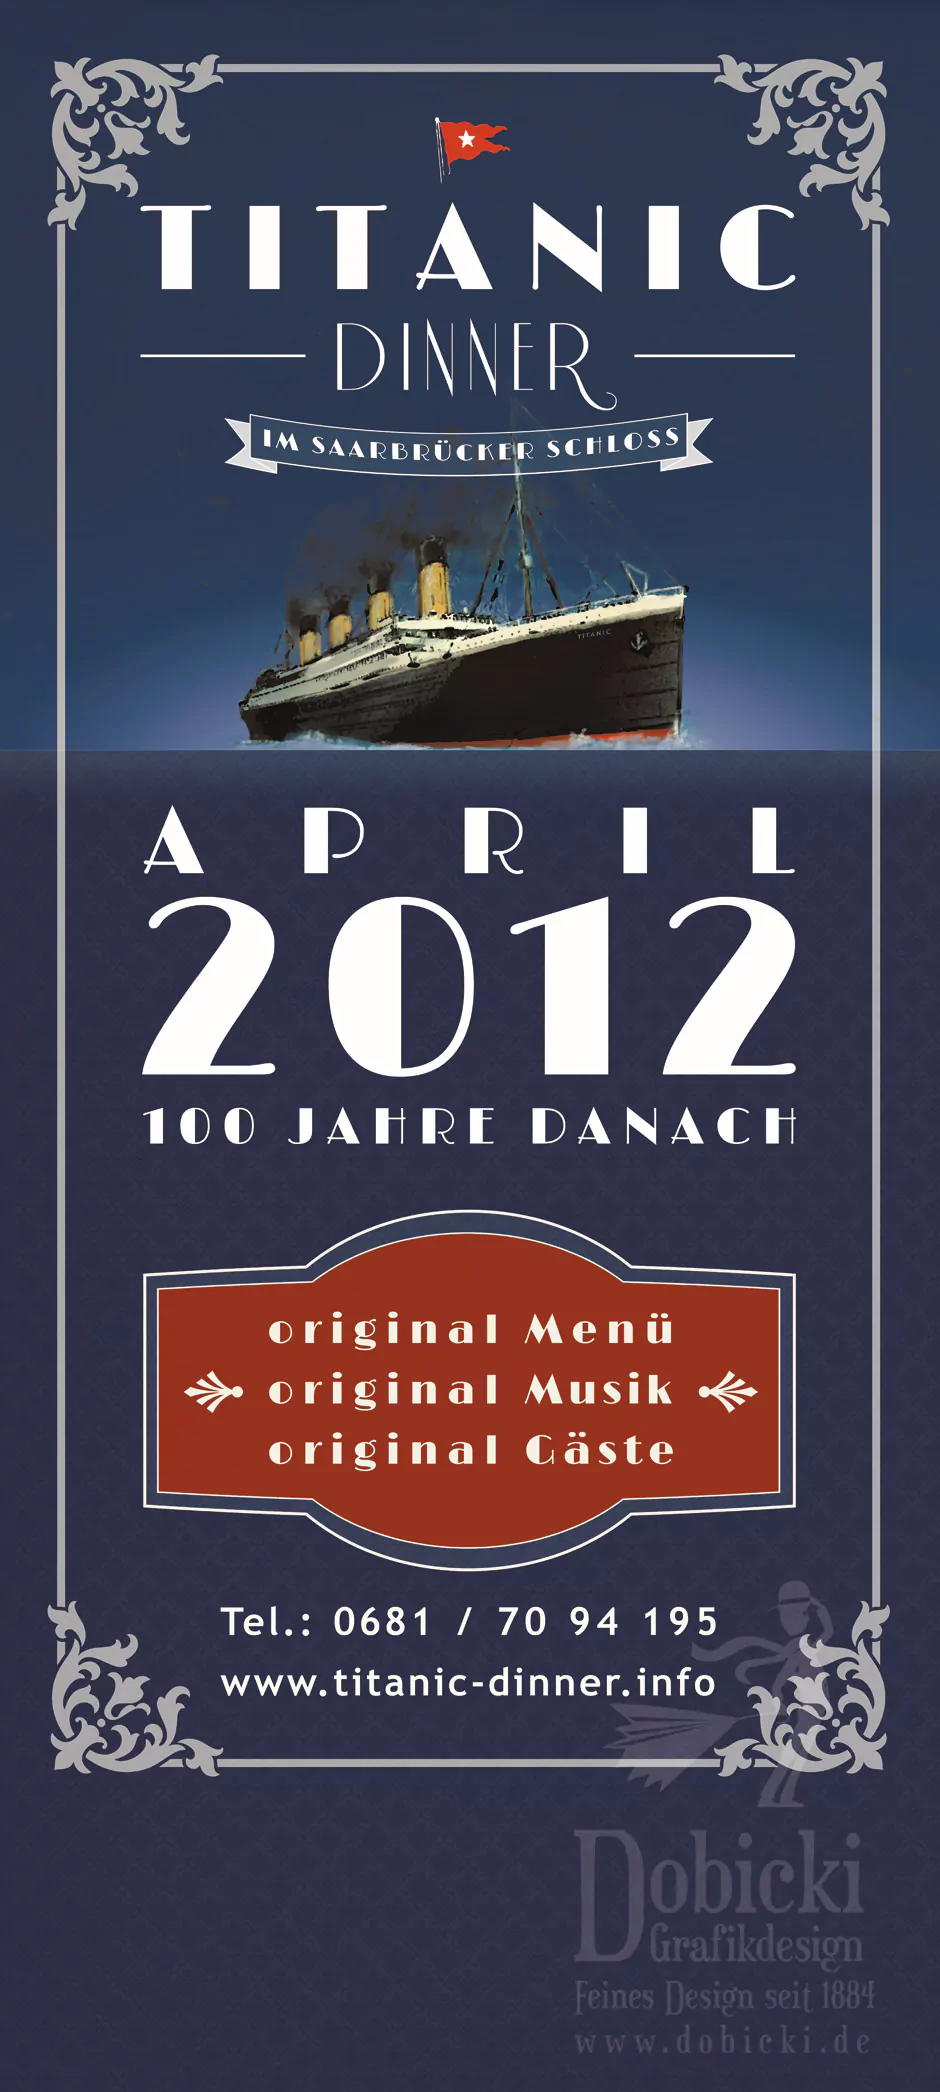 titanic banner DRUCKFINAL mit Location